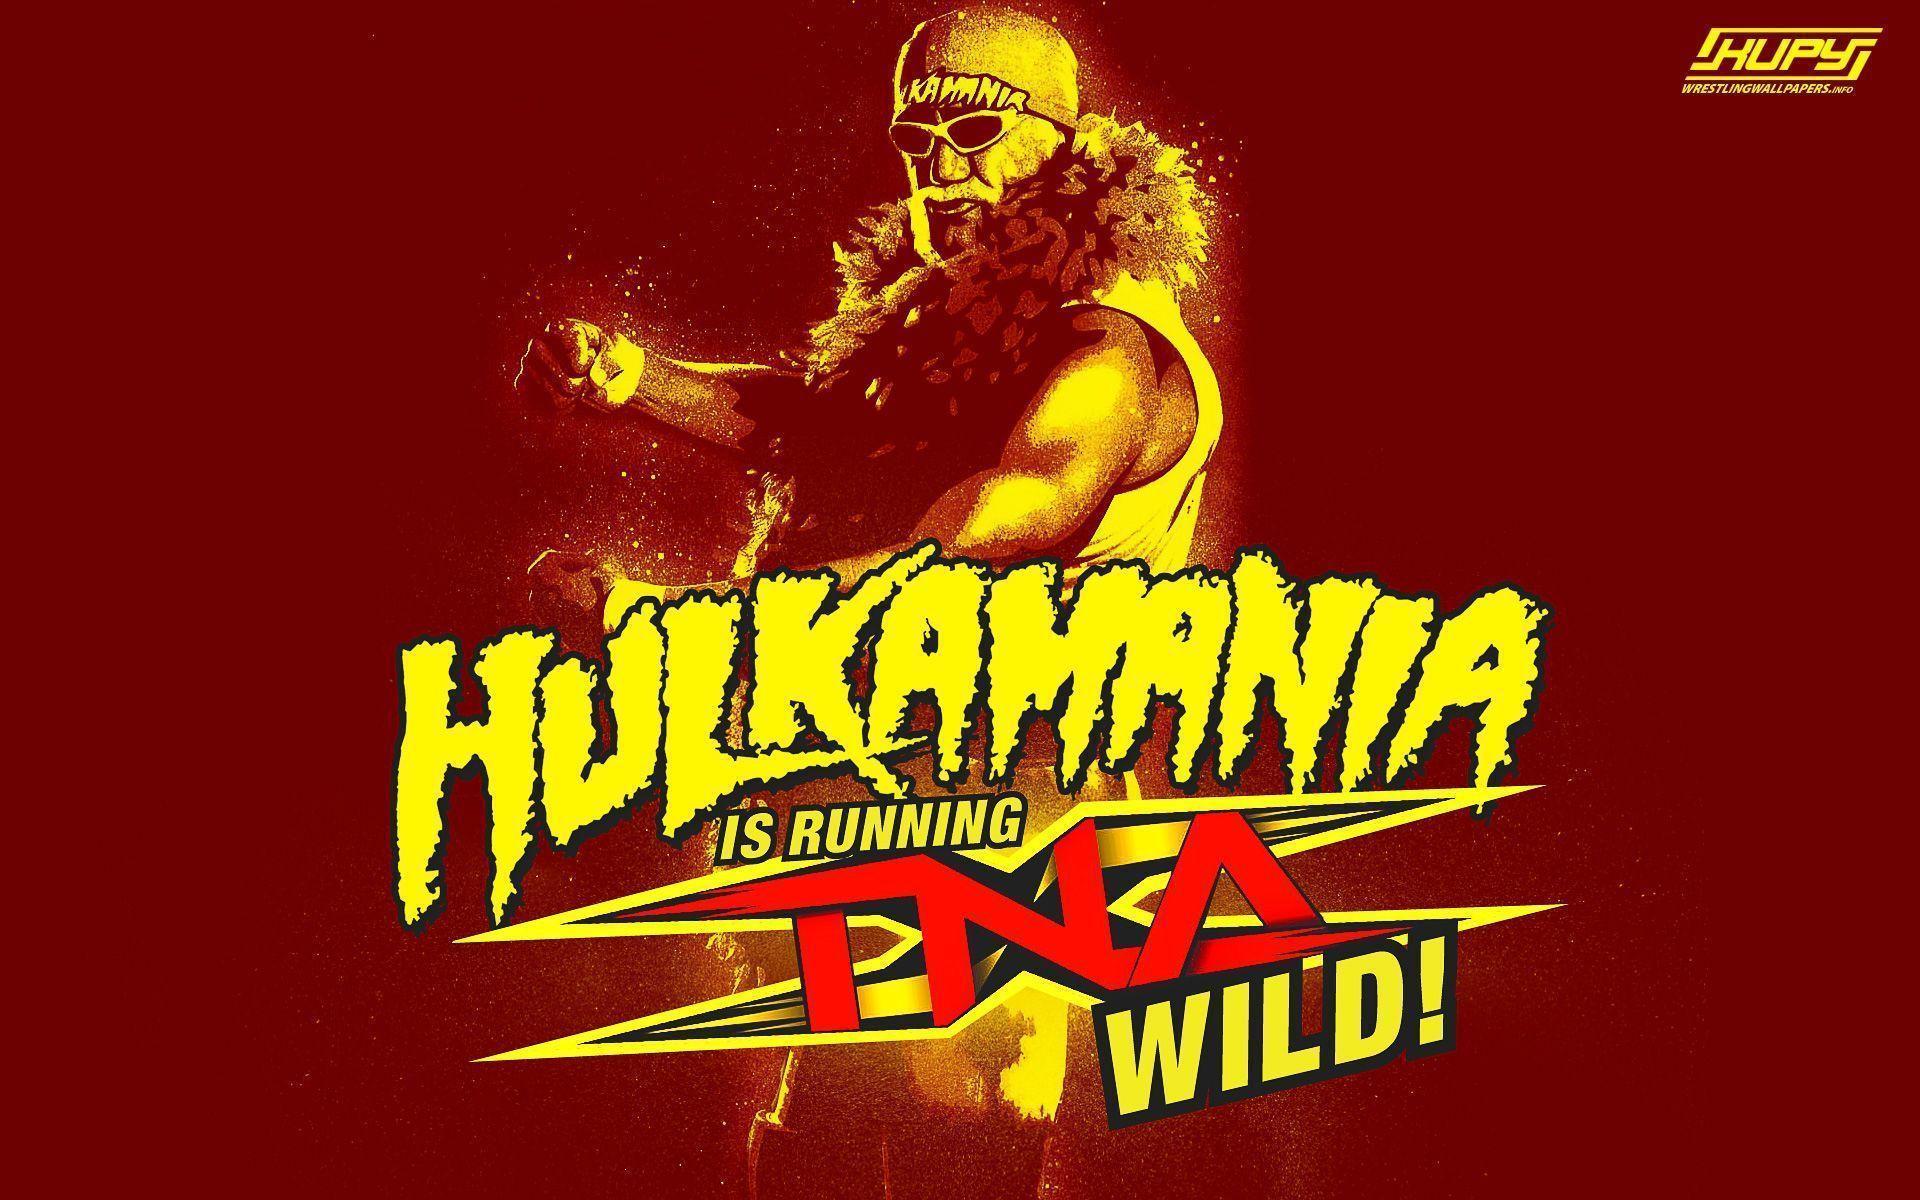 NEW Hulk Hogan TNA wallpaper! Wrestling Wallpaper